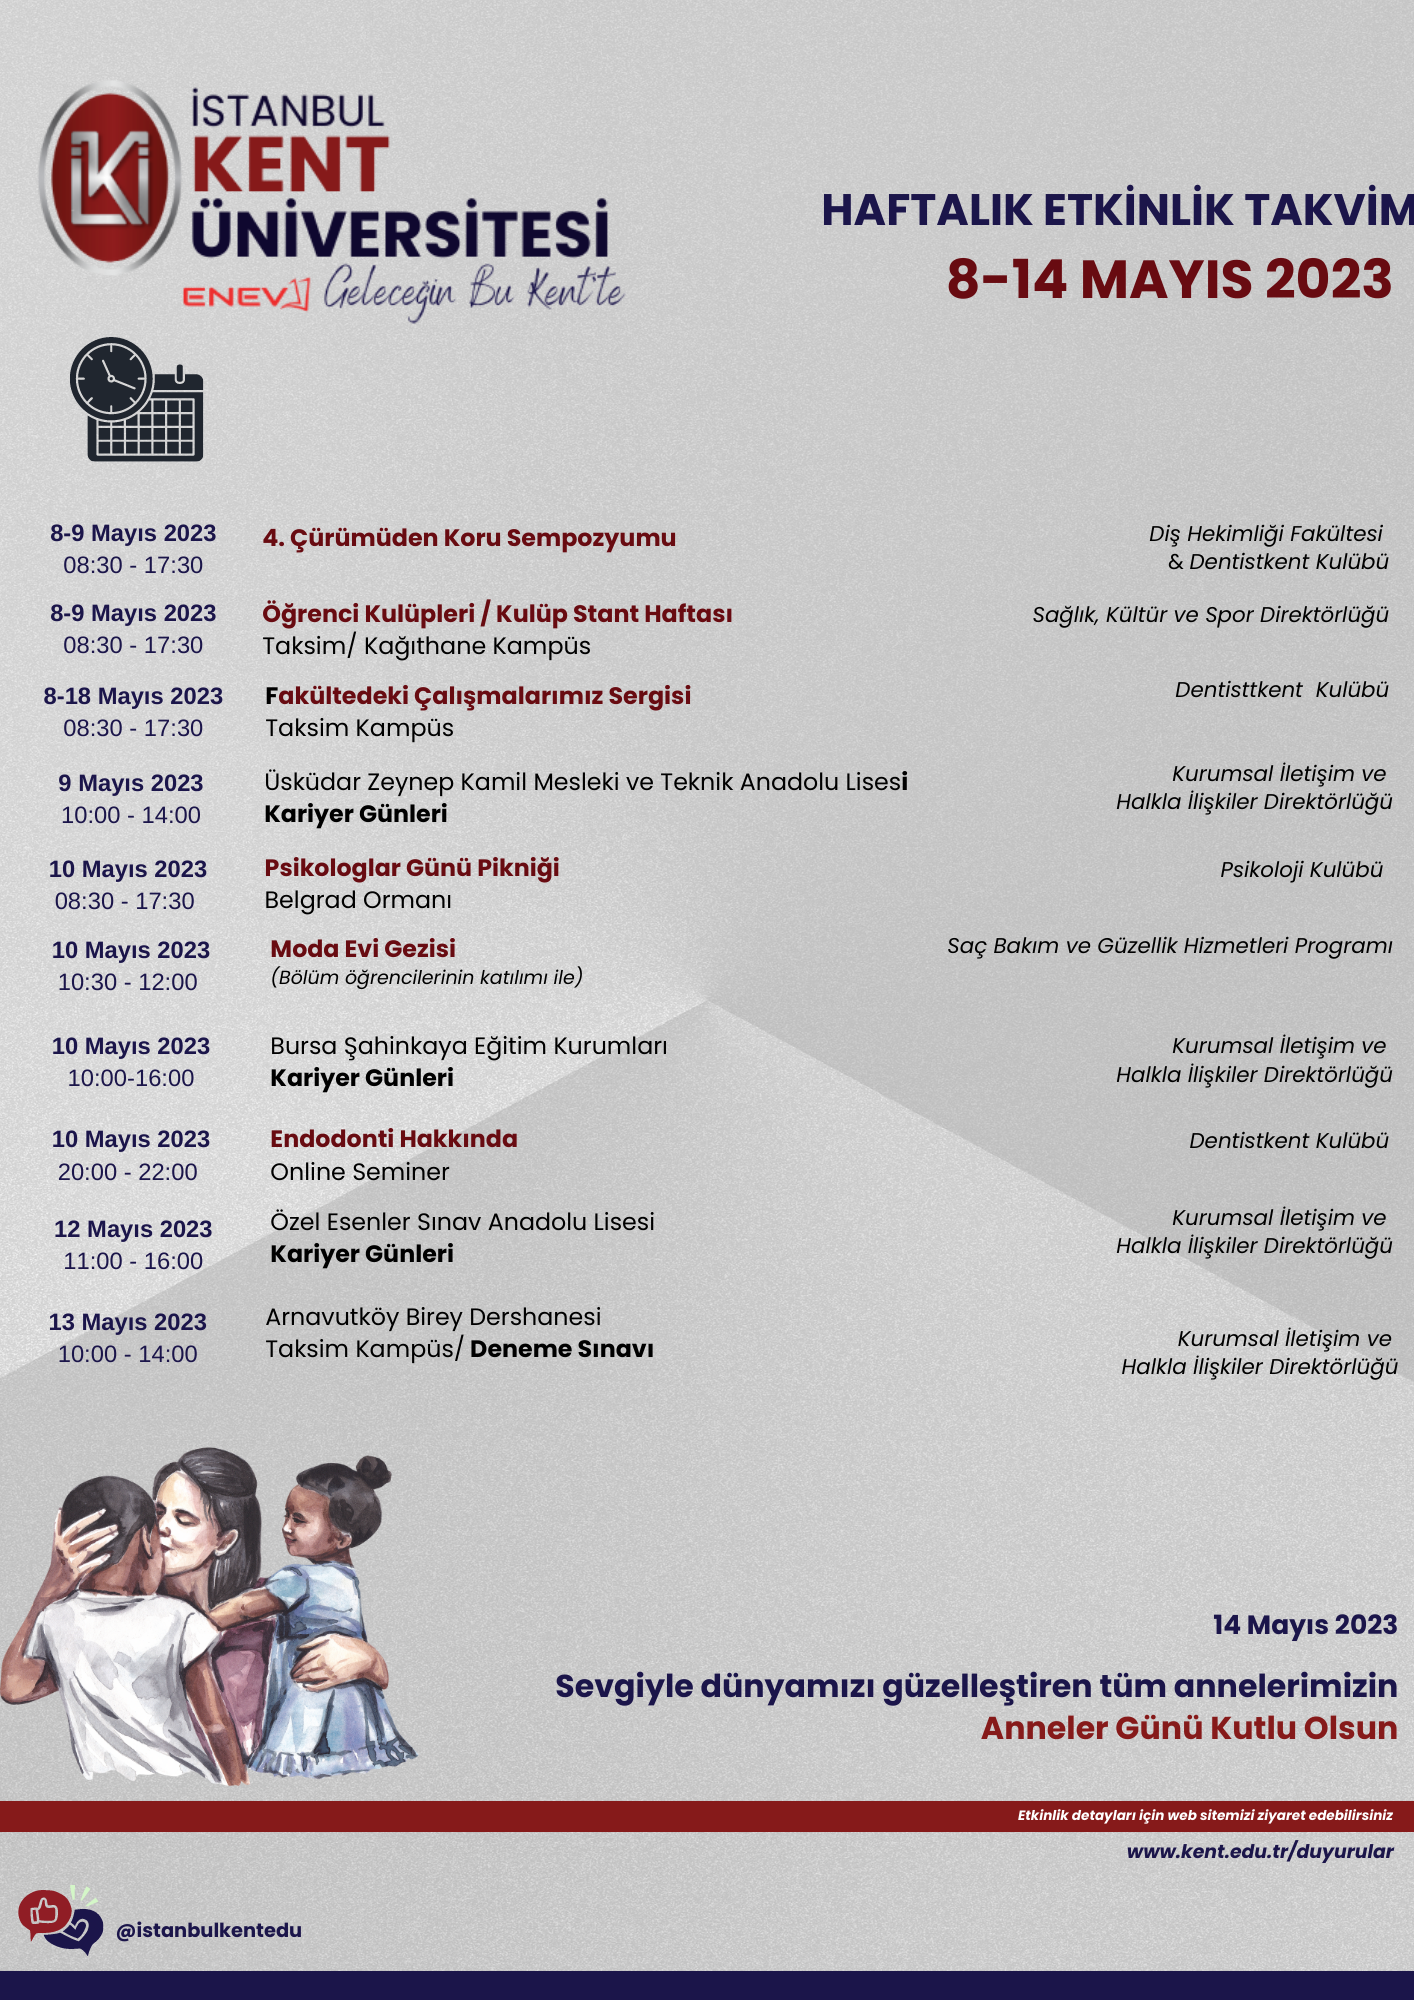 8 -14 Mayıs 2023 İstanbul KENT Üniversitesi Haftalık Etkinlikler